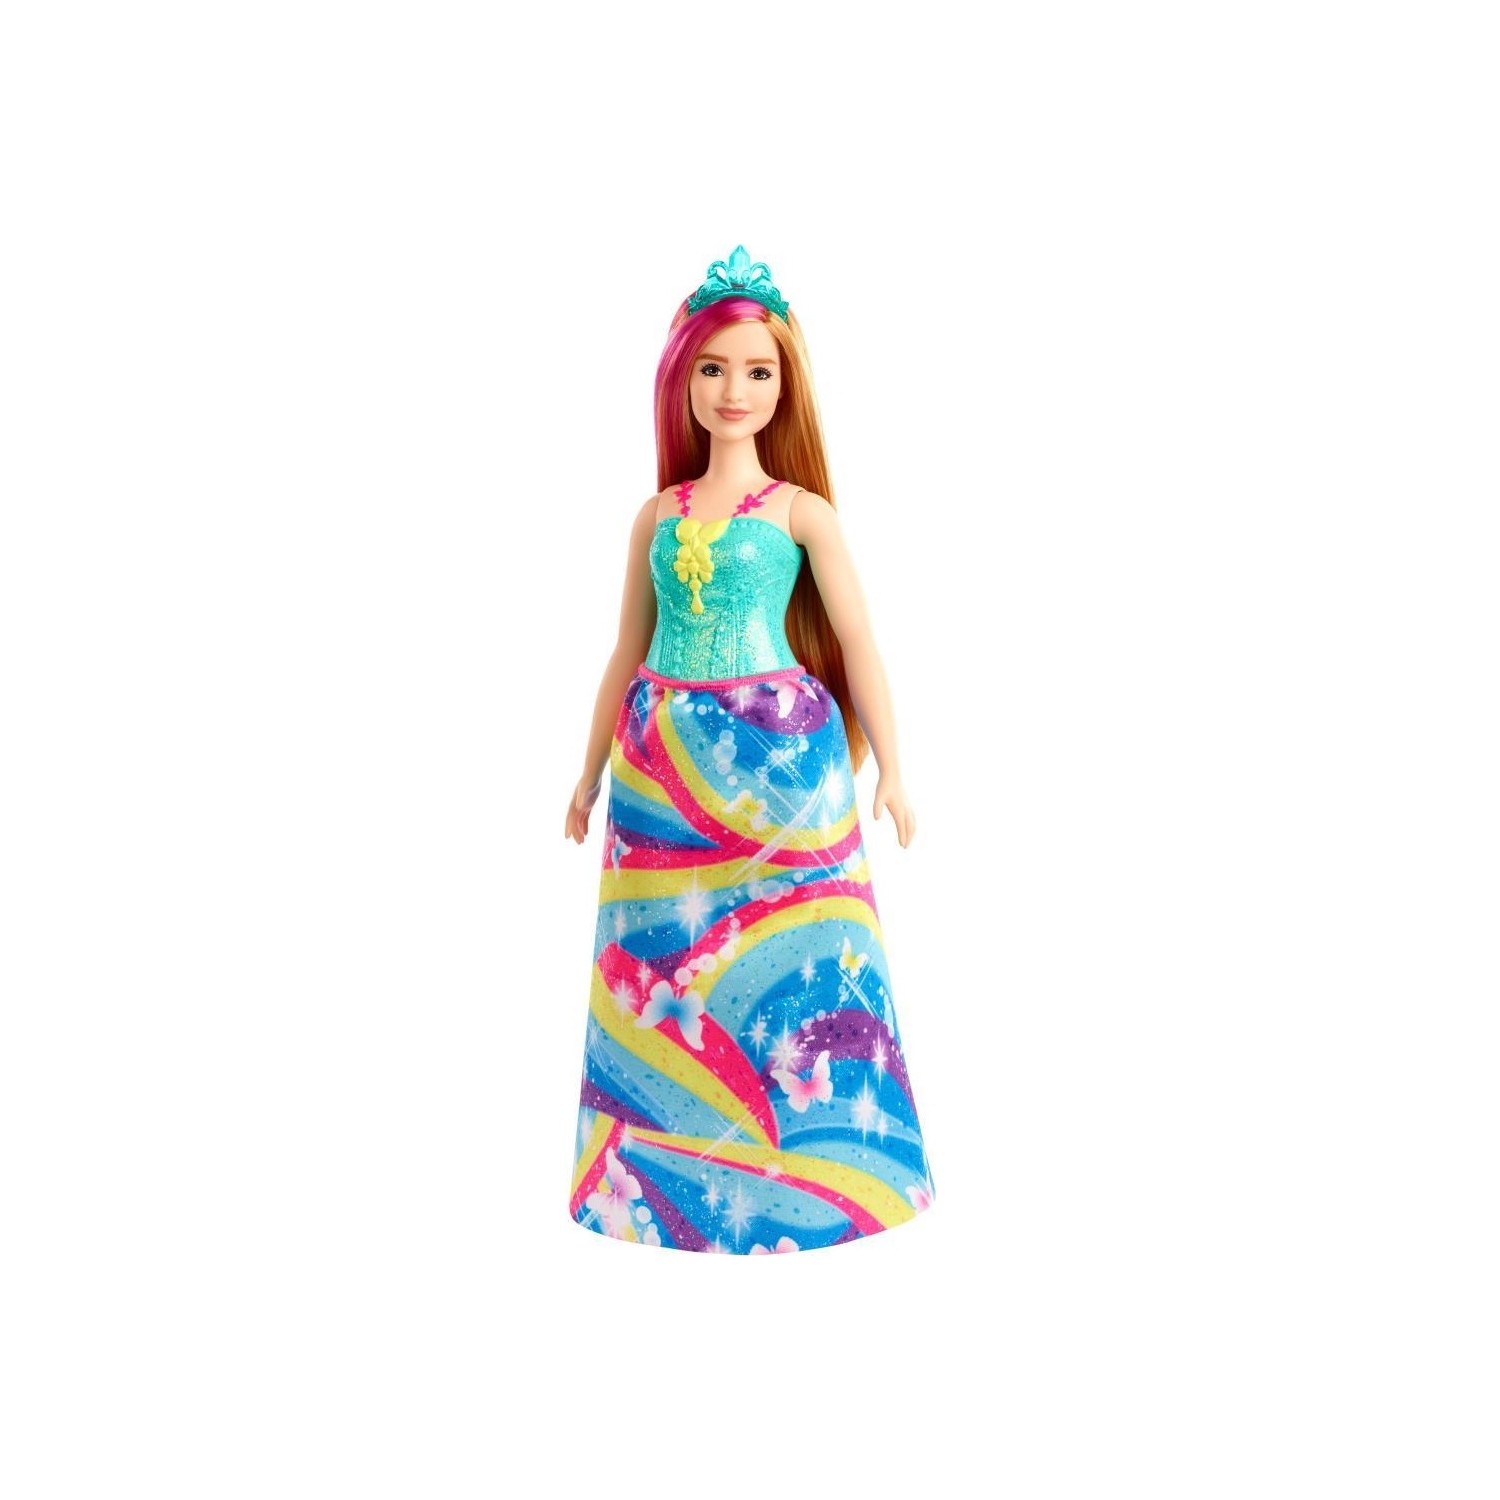 Кукла Barbie Dreamtopia Princess Dolls GJK16 кукла barbie dreamtopia rainbow latiin princess